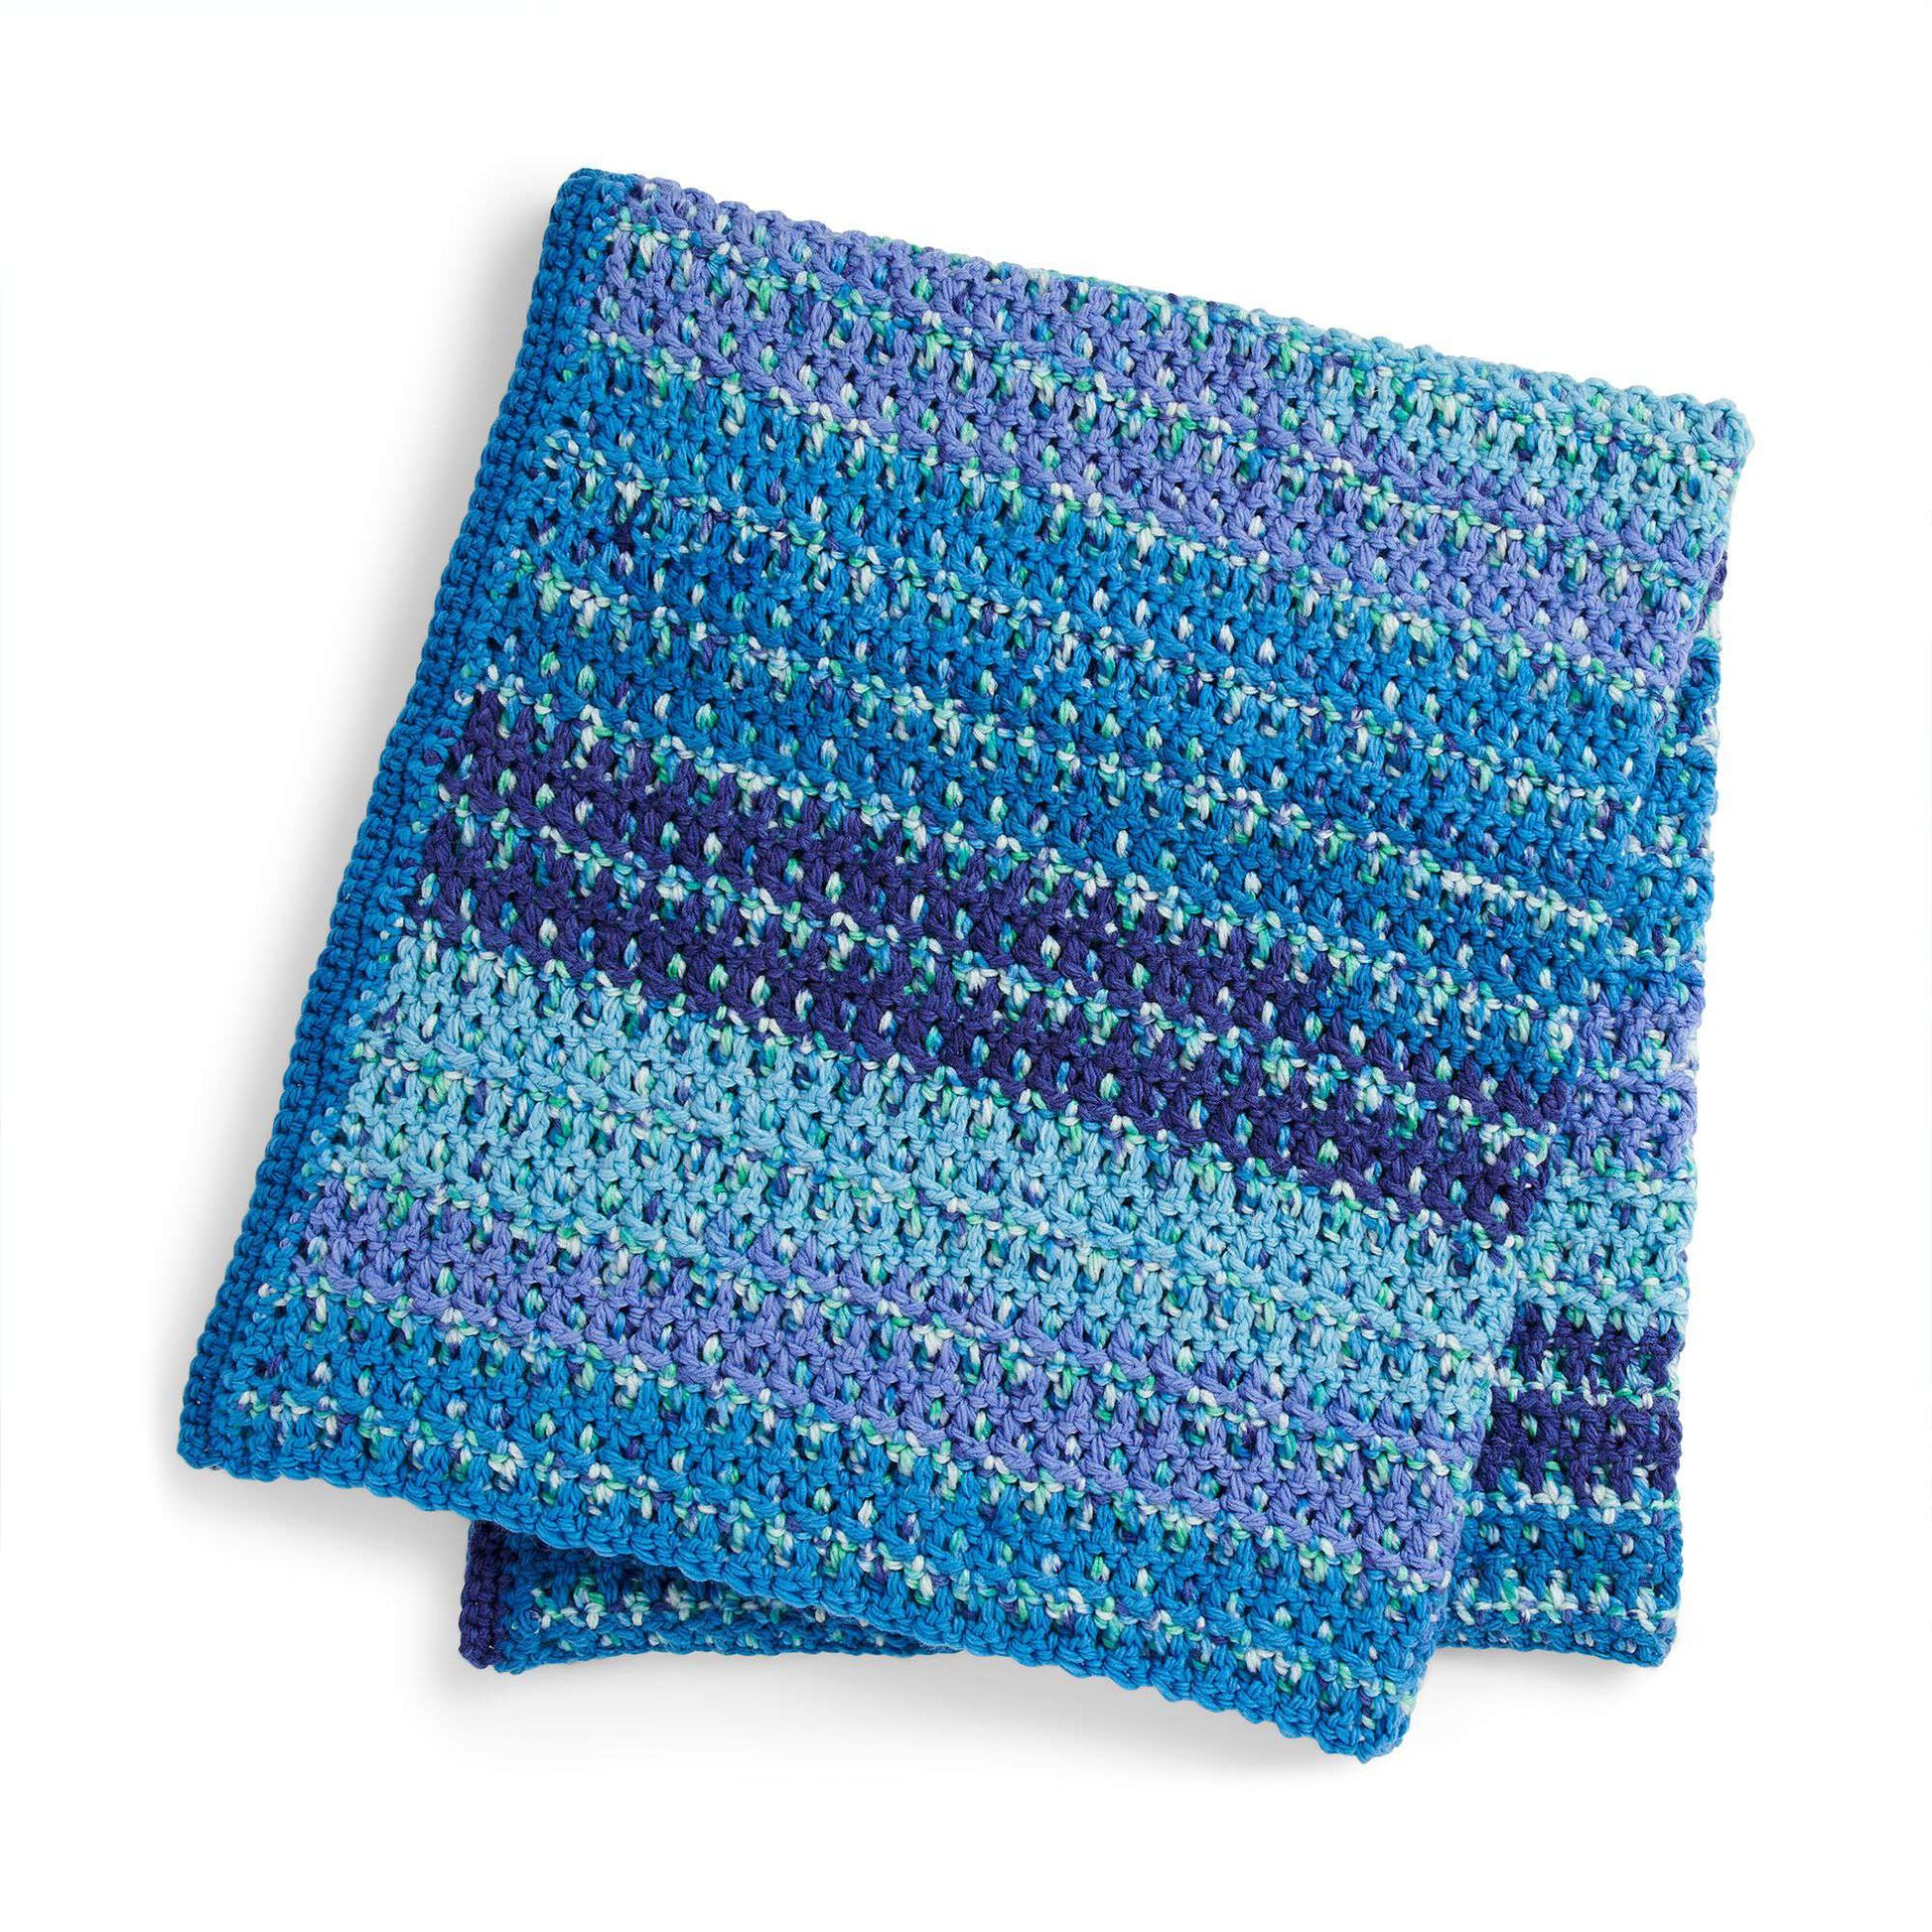 Free Caron Woven Look Crochet Blanket Pattern